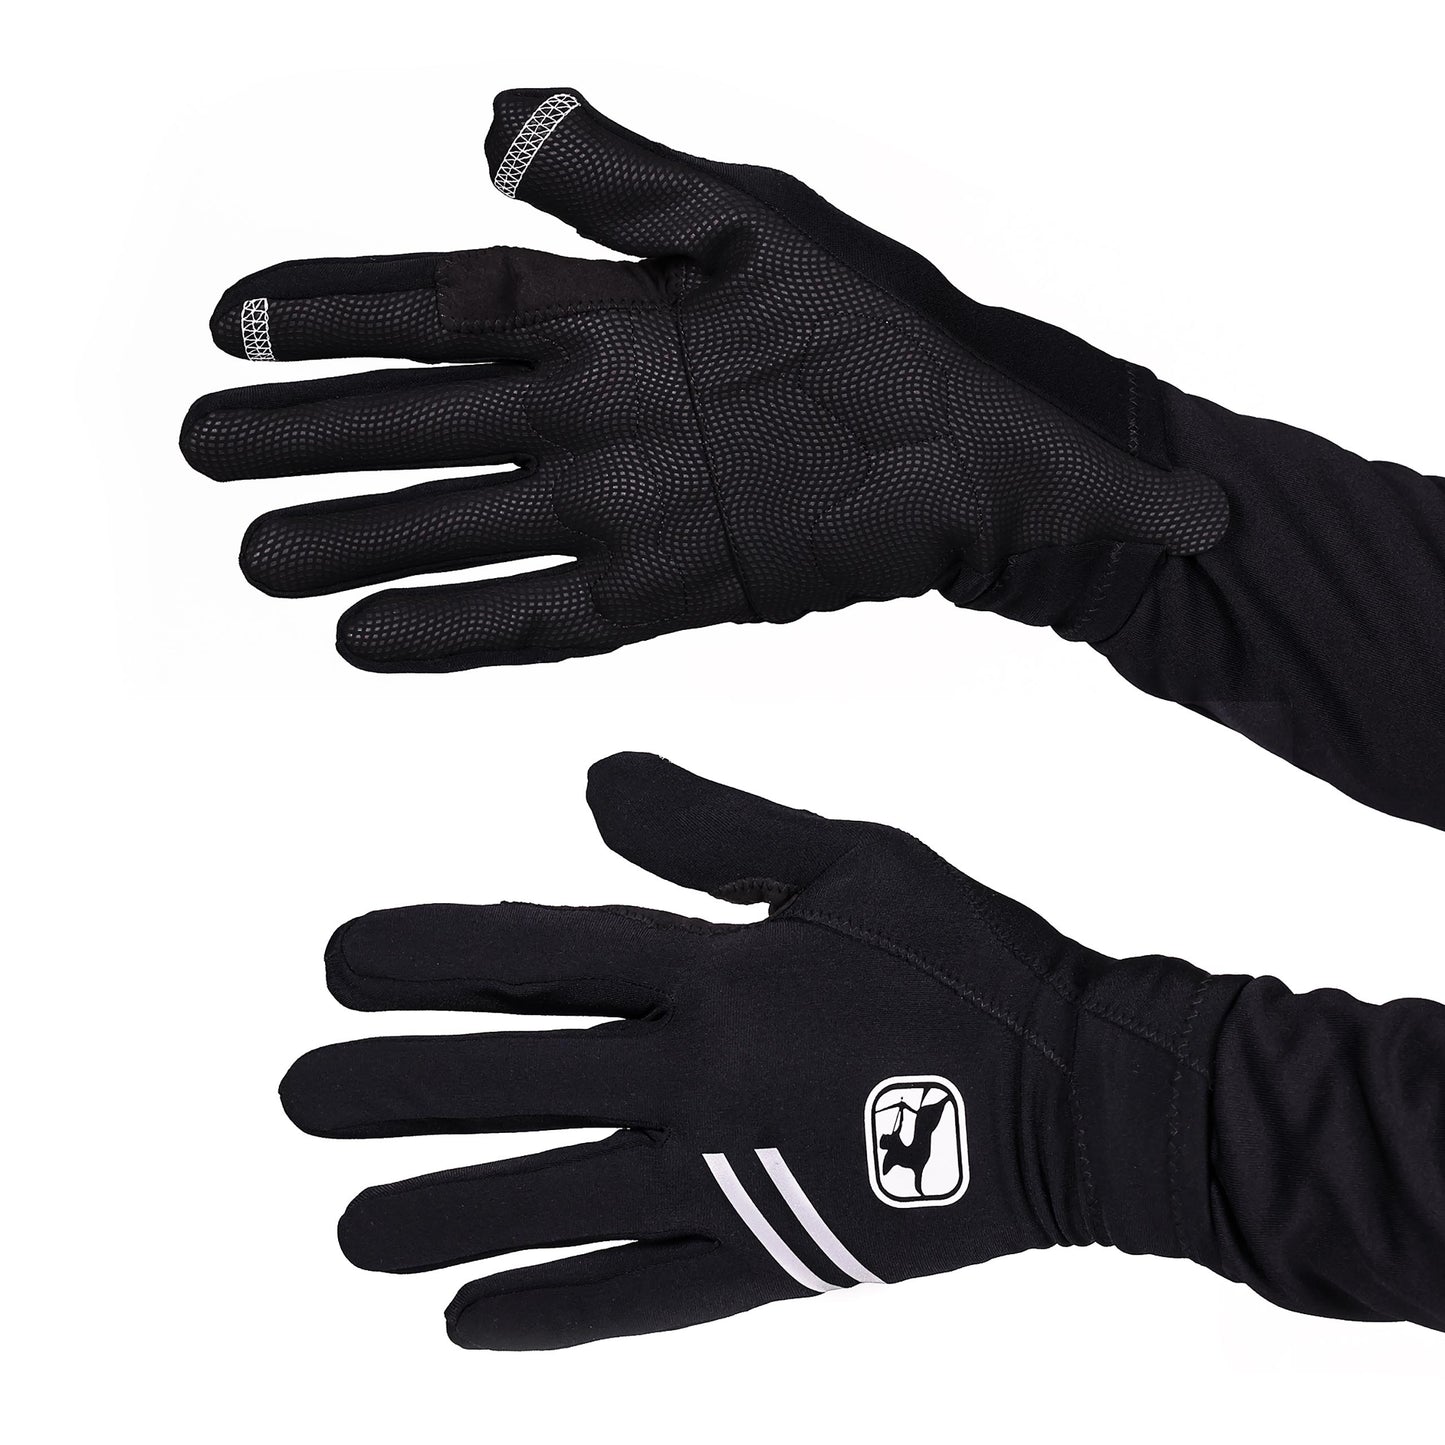 G-Shield Thermal Full Finger Gloves